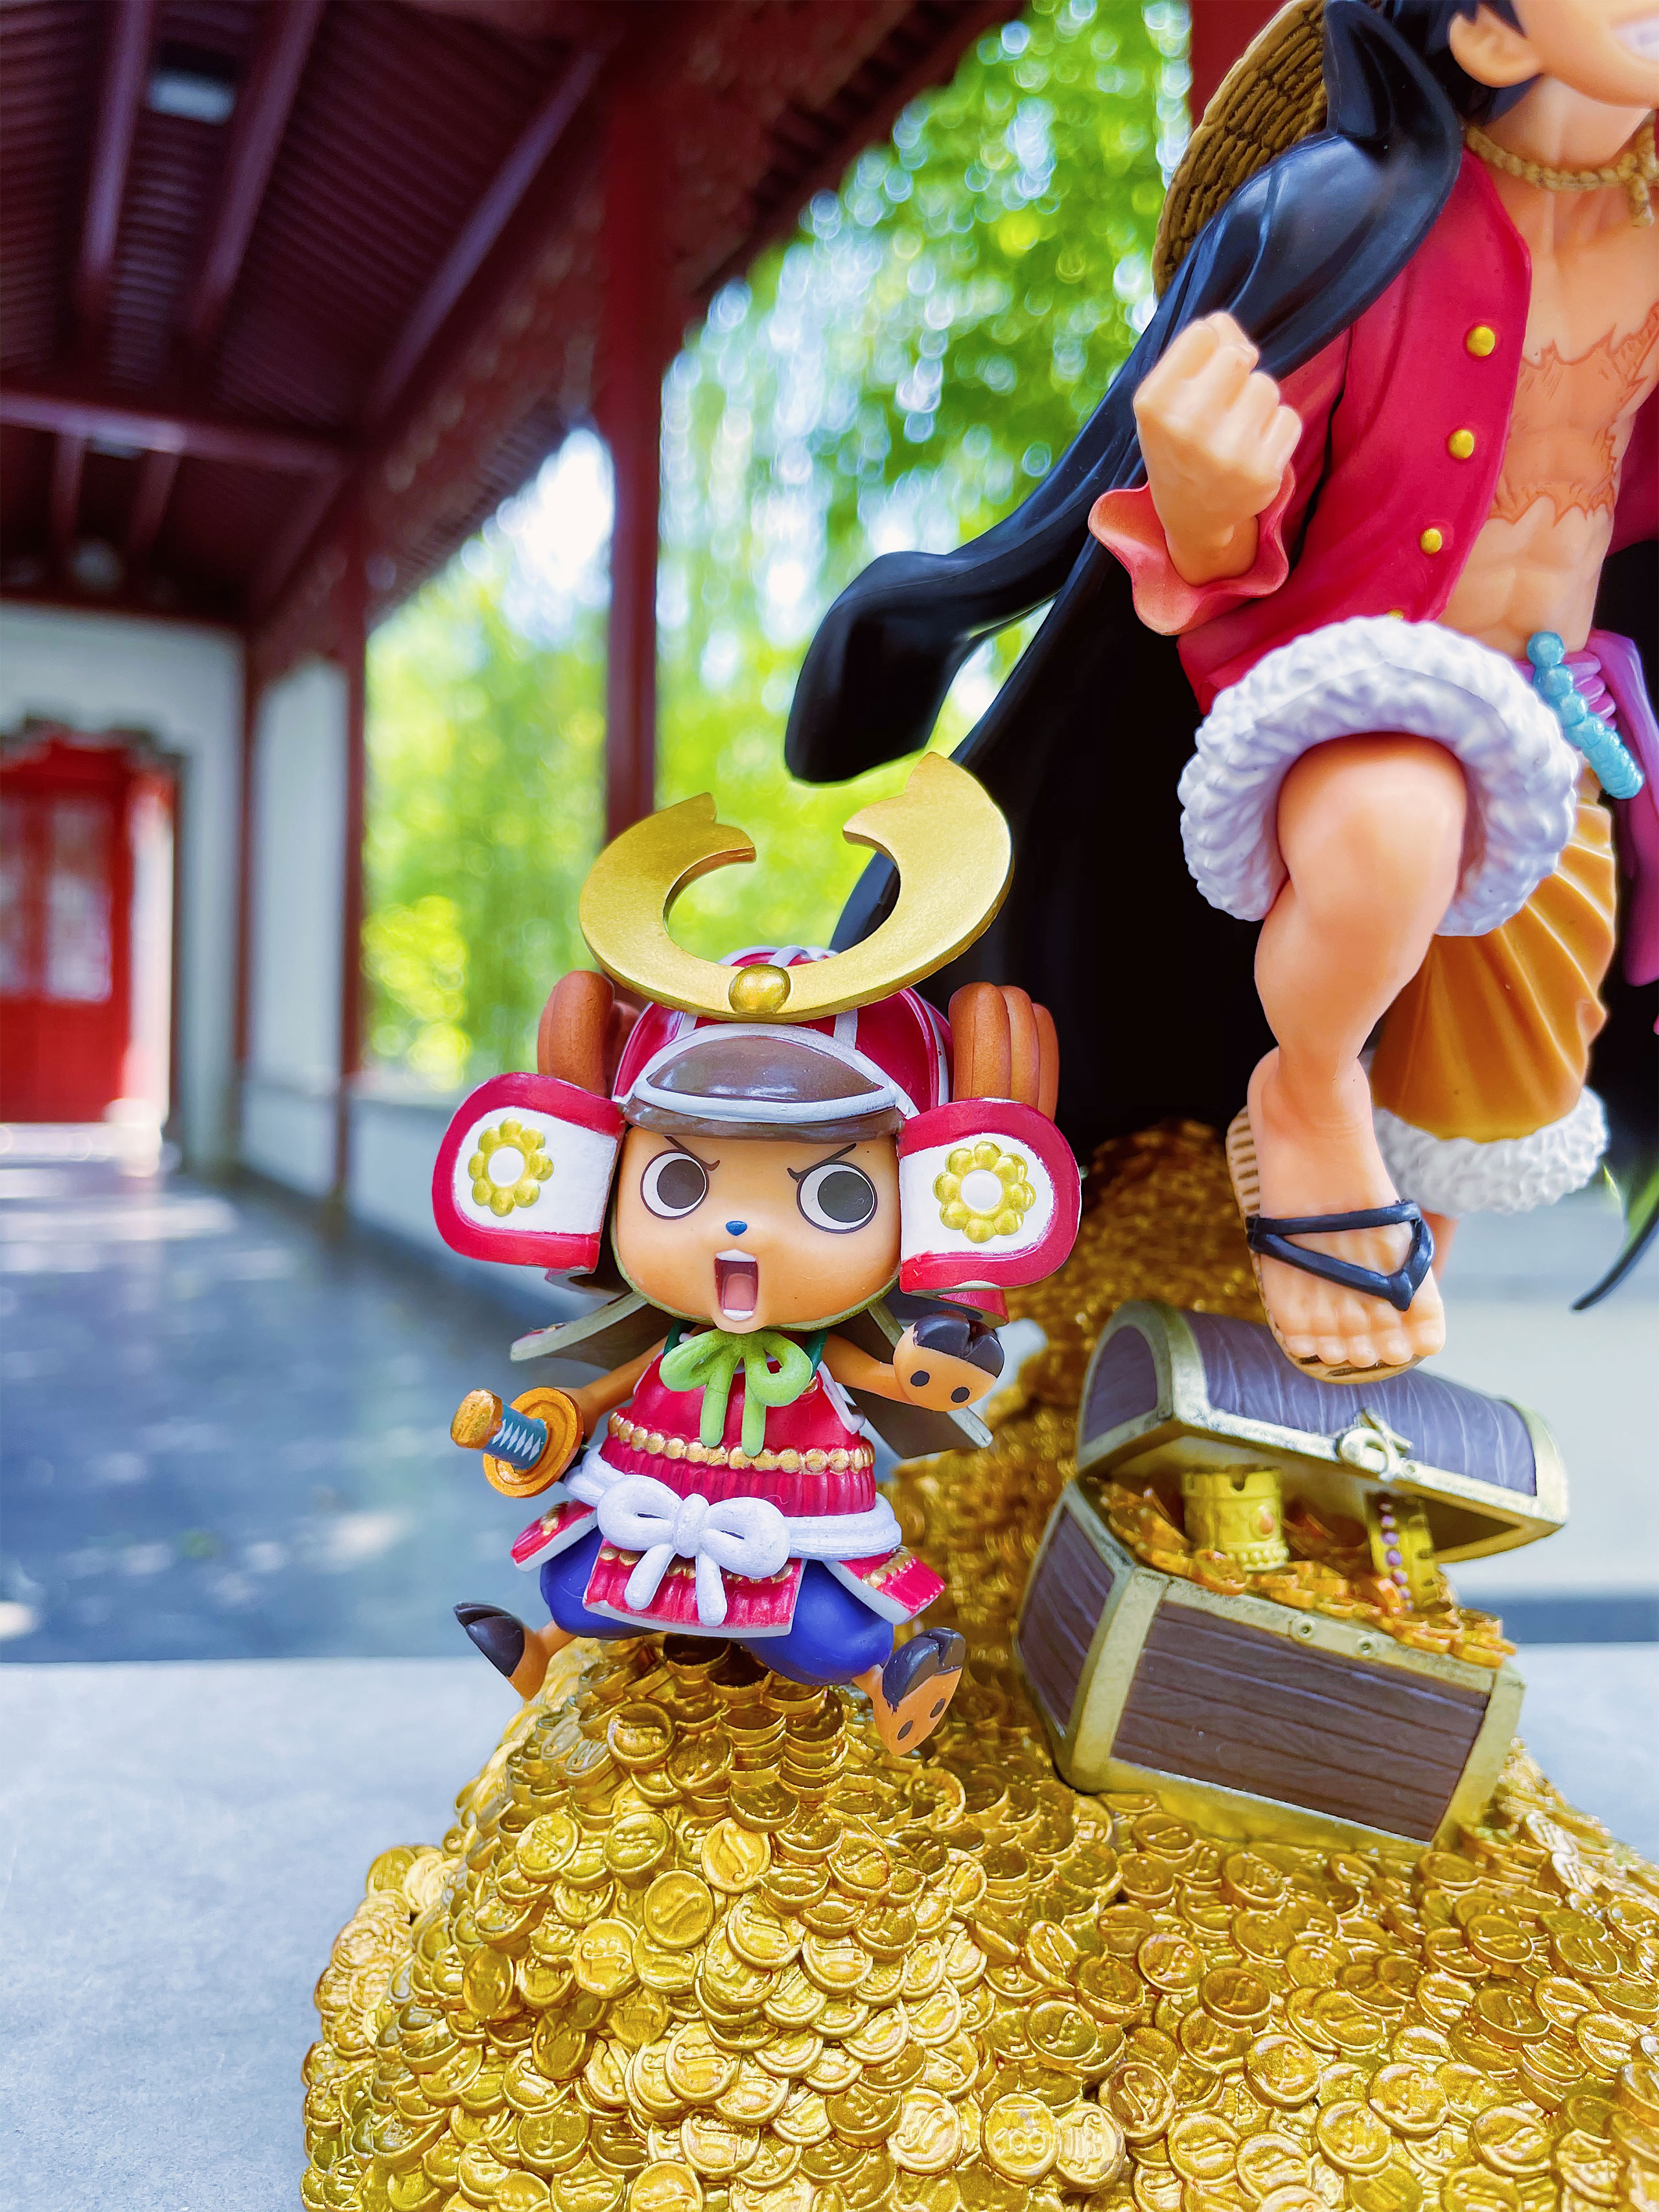 One Piece - Figurine Luffy avec Chopper